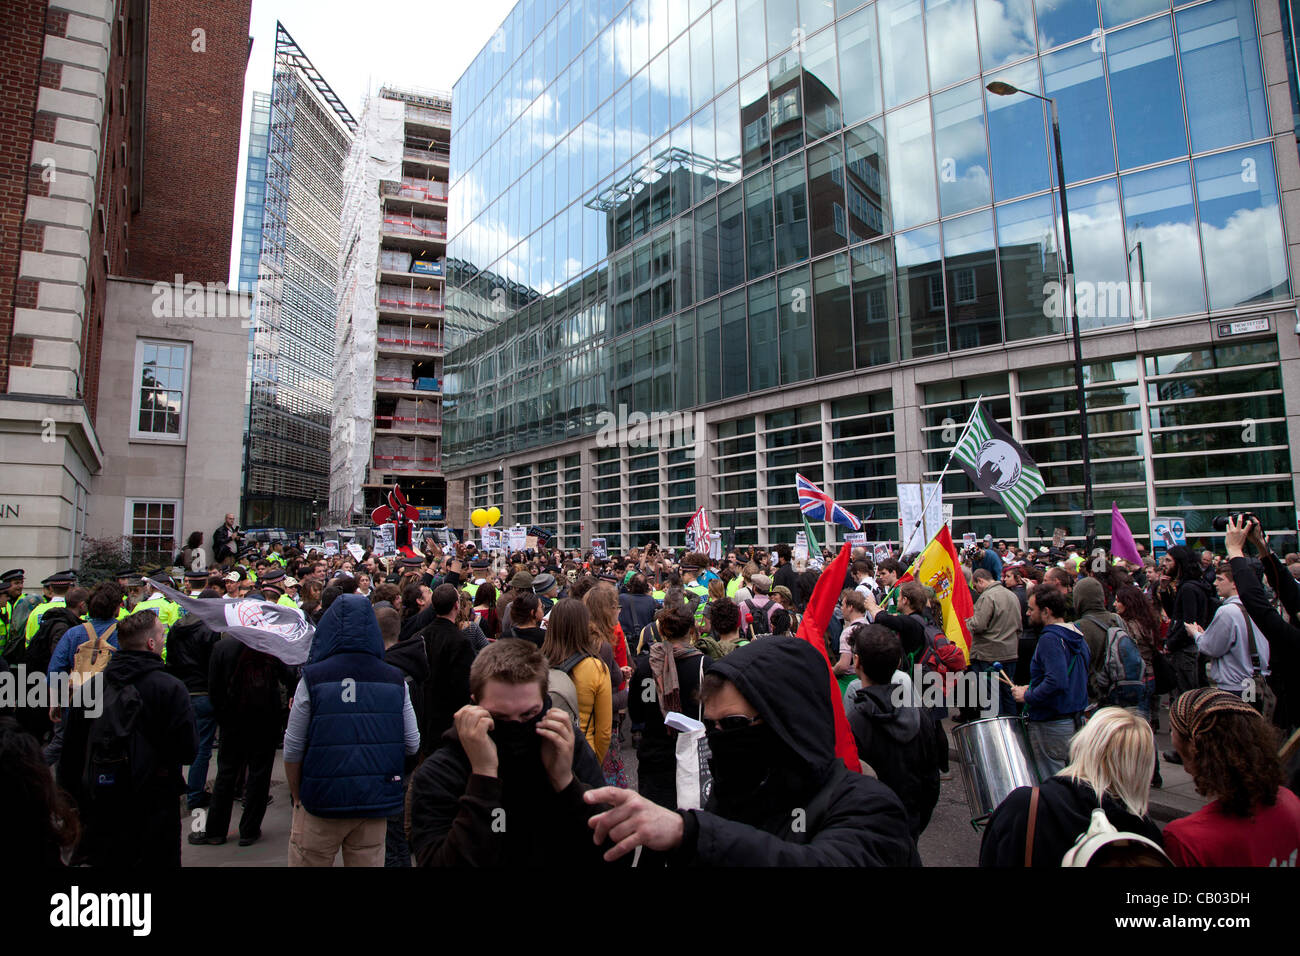 London, UK. 12 Mai 2012 sind Mitglieder der Occupy London Bewegung und anderen Demonstranten versammelten sich in St. Paul vor dem Umzug in die Stadt Ziel nennen sie die "1 %" Institutionen. Stockfoto